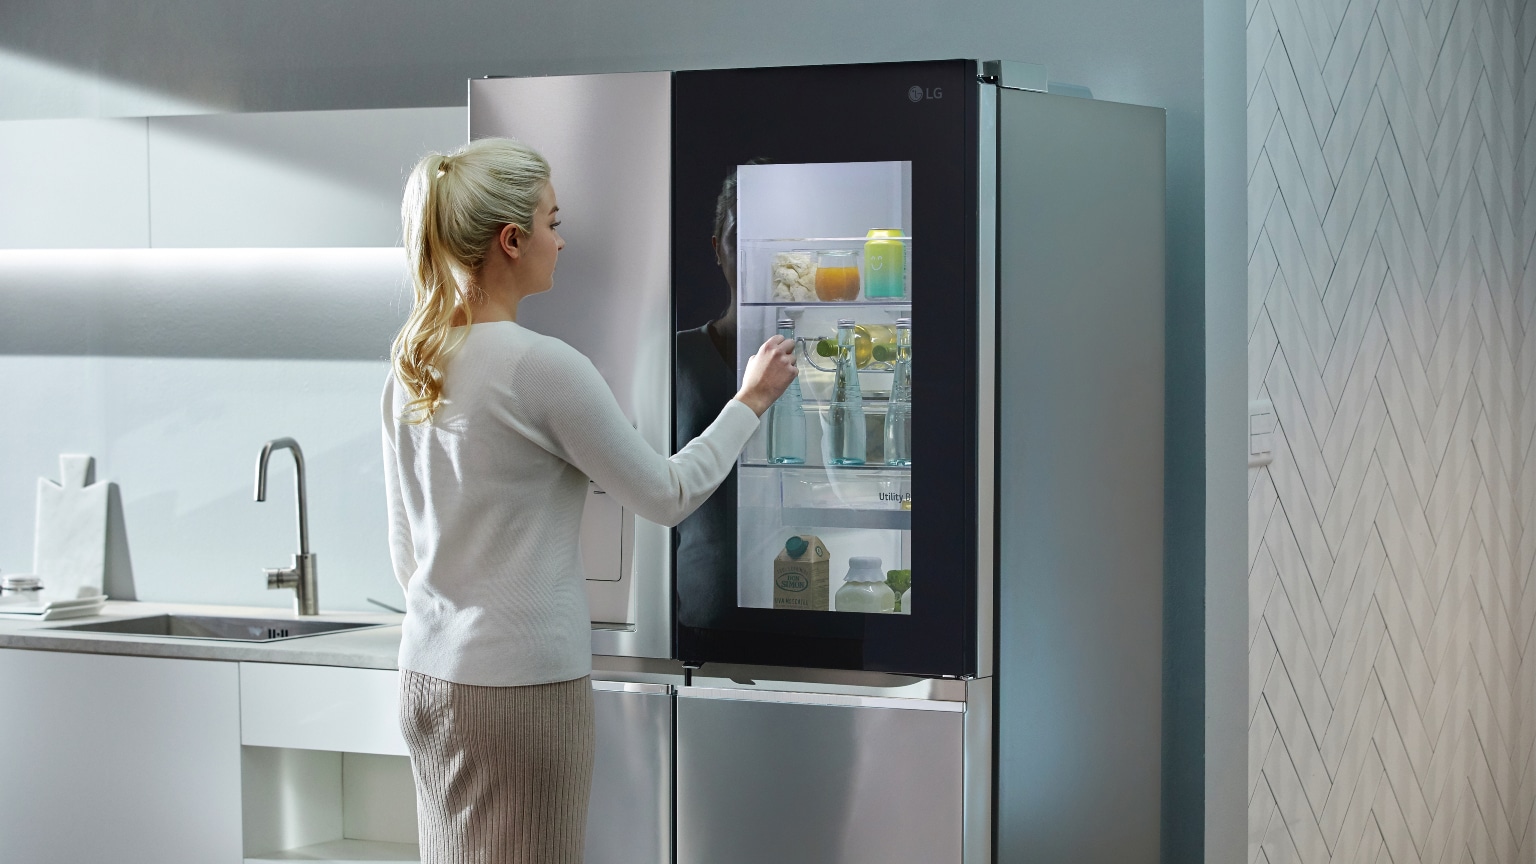 Come funziona un frigorifero: immagine di un frigorifero in una cucina arredata